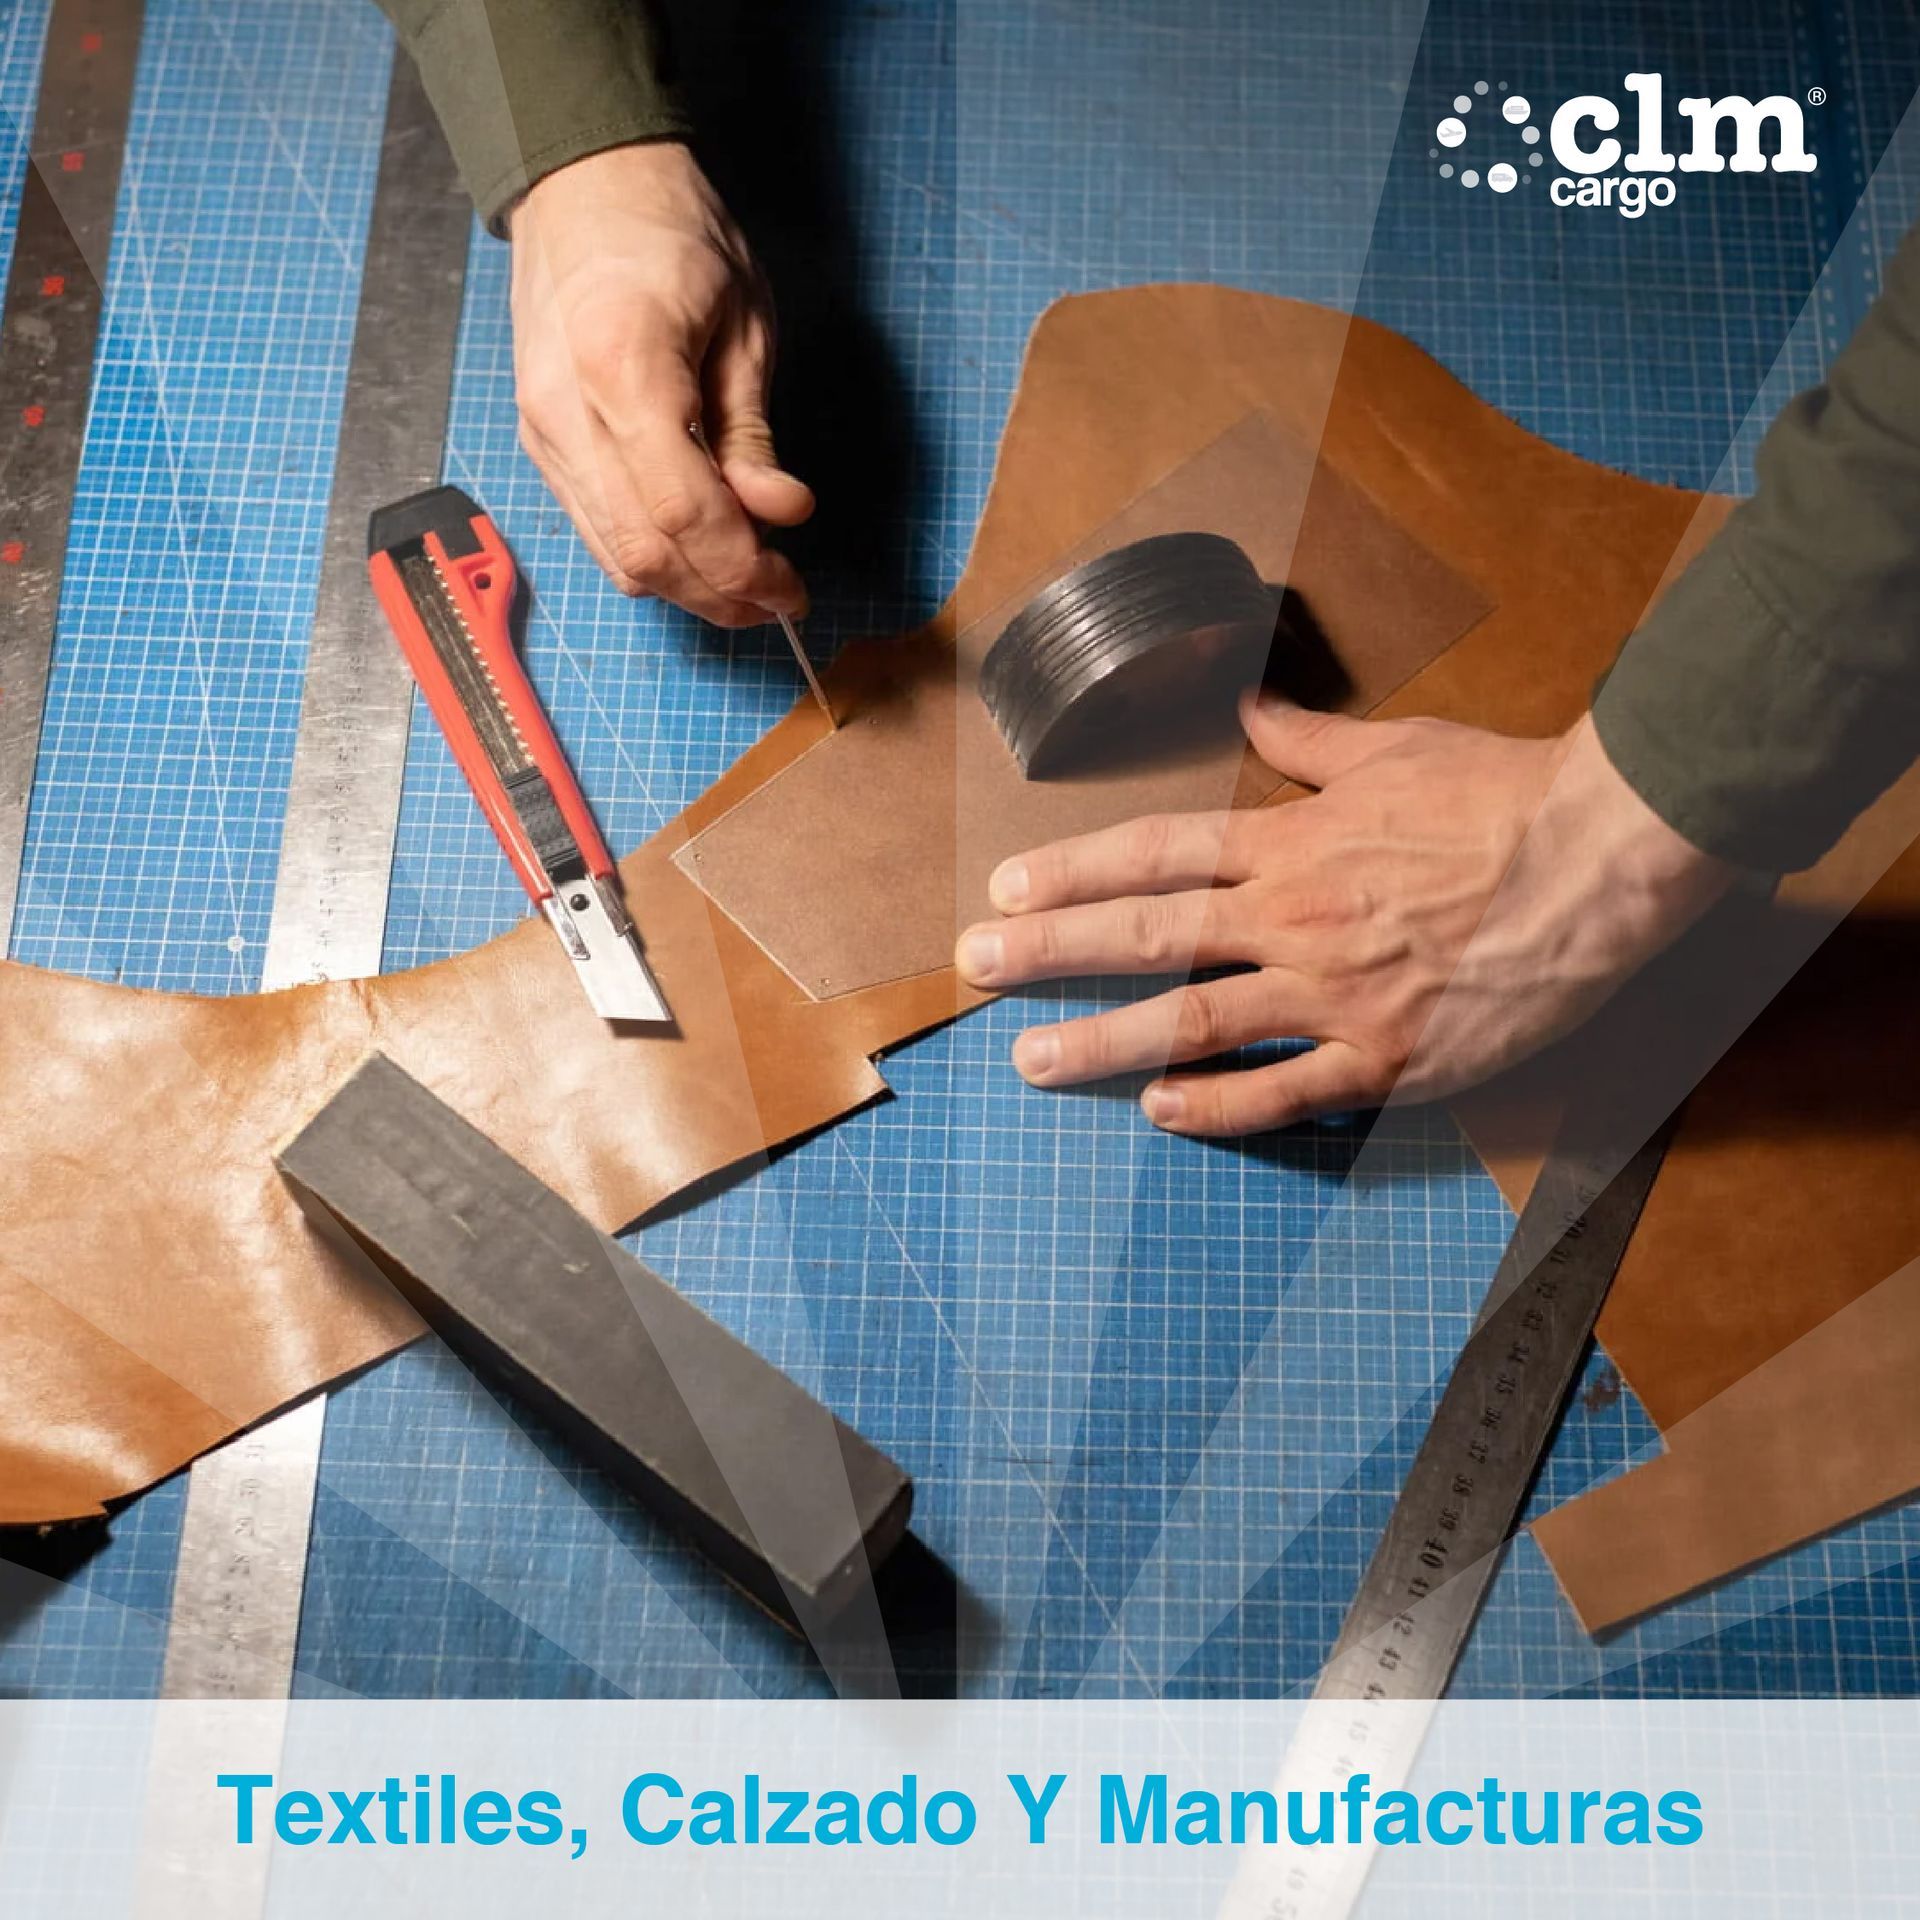 CLM Cargo Textiles, calzado y manufacturas
